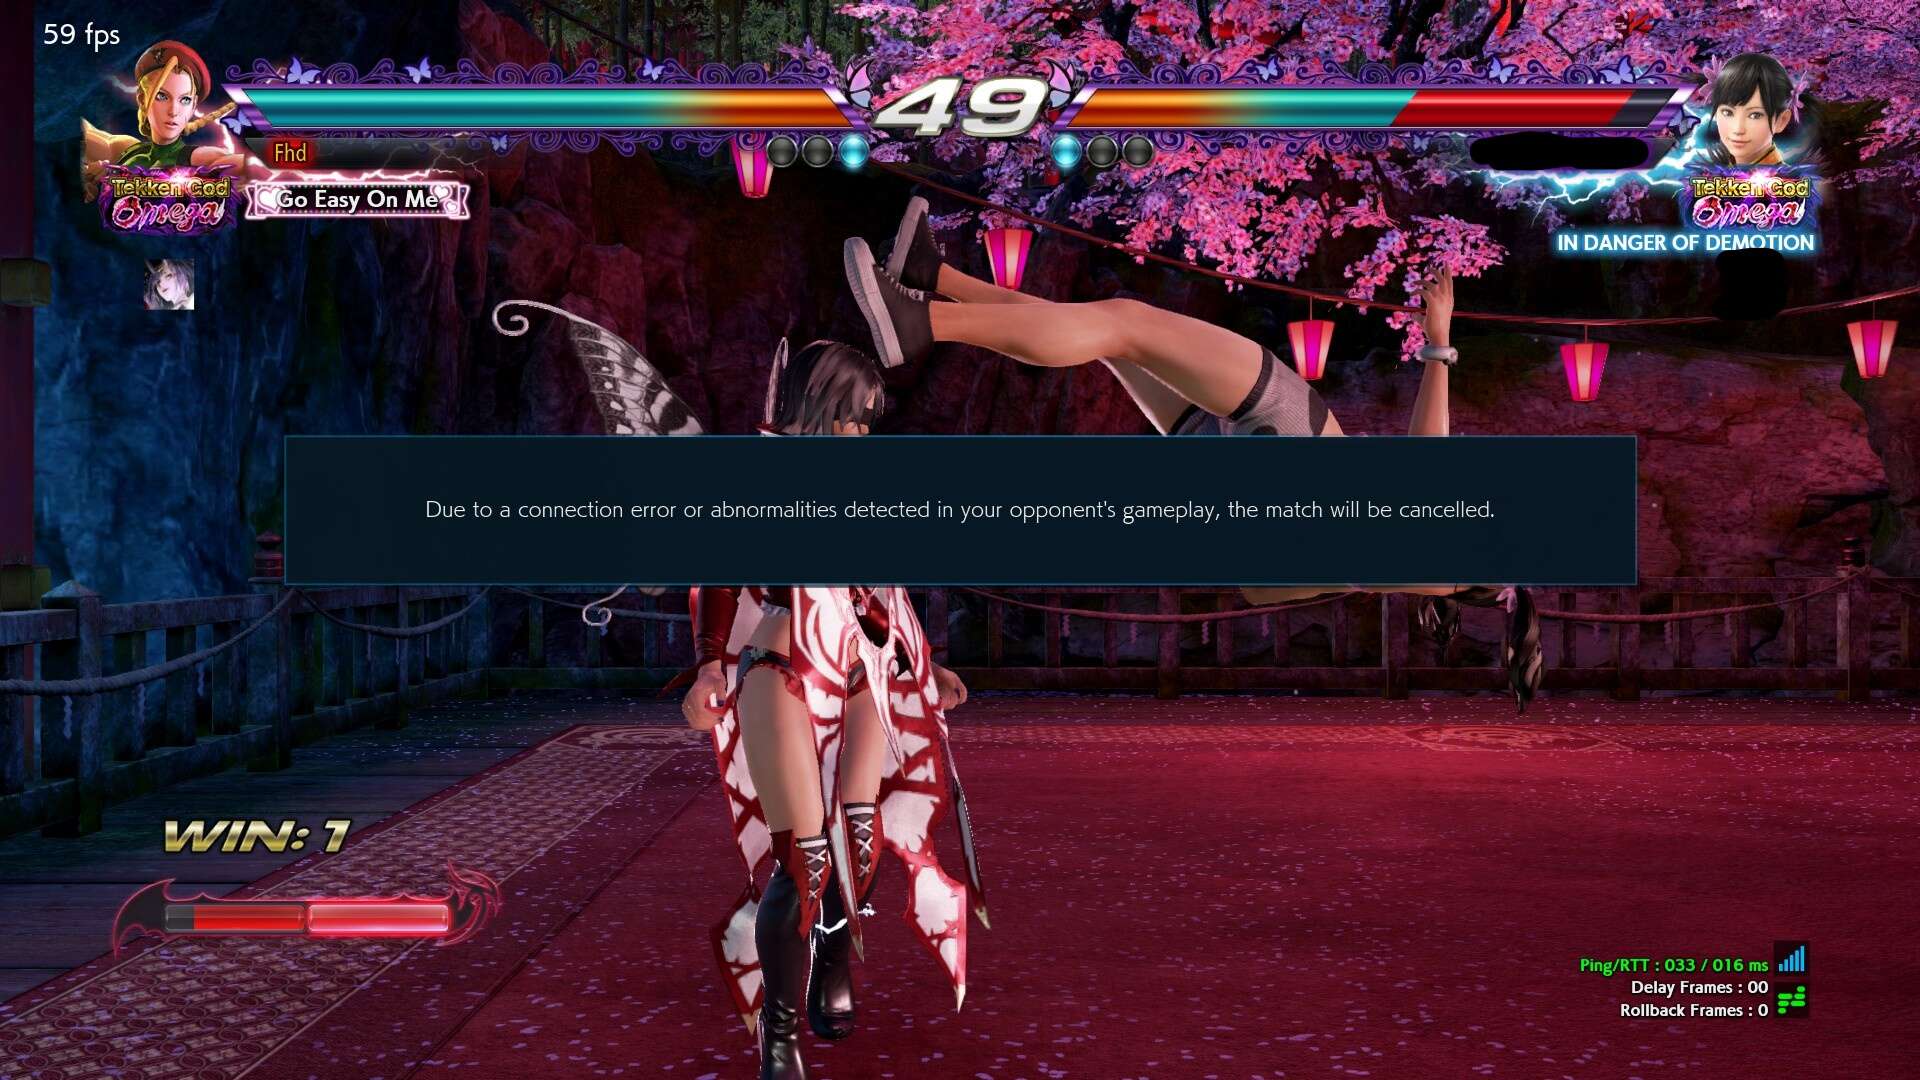 A player gets disconnected in an online Tekken 7 Match.